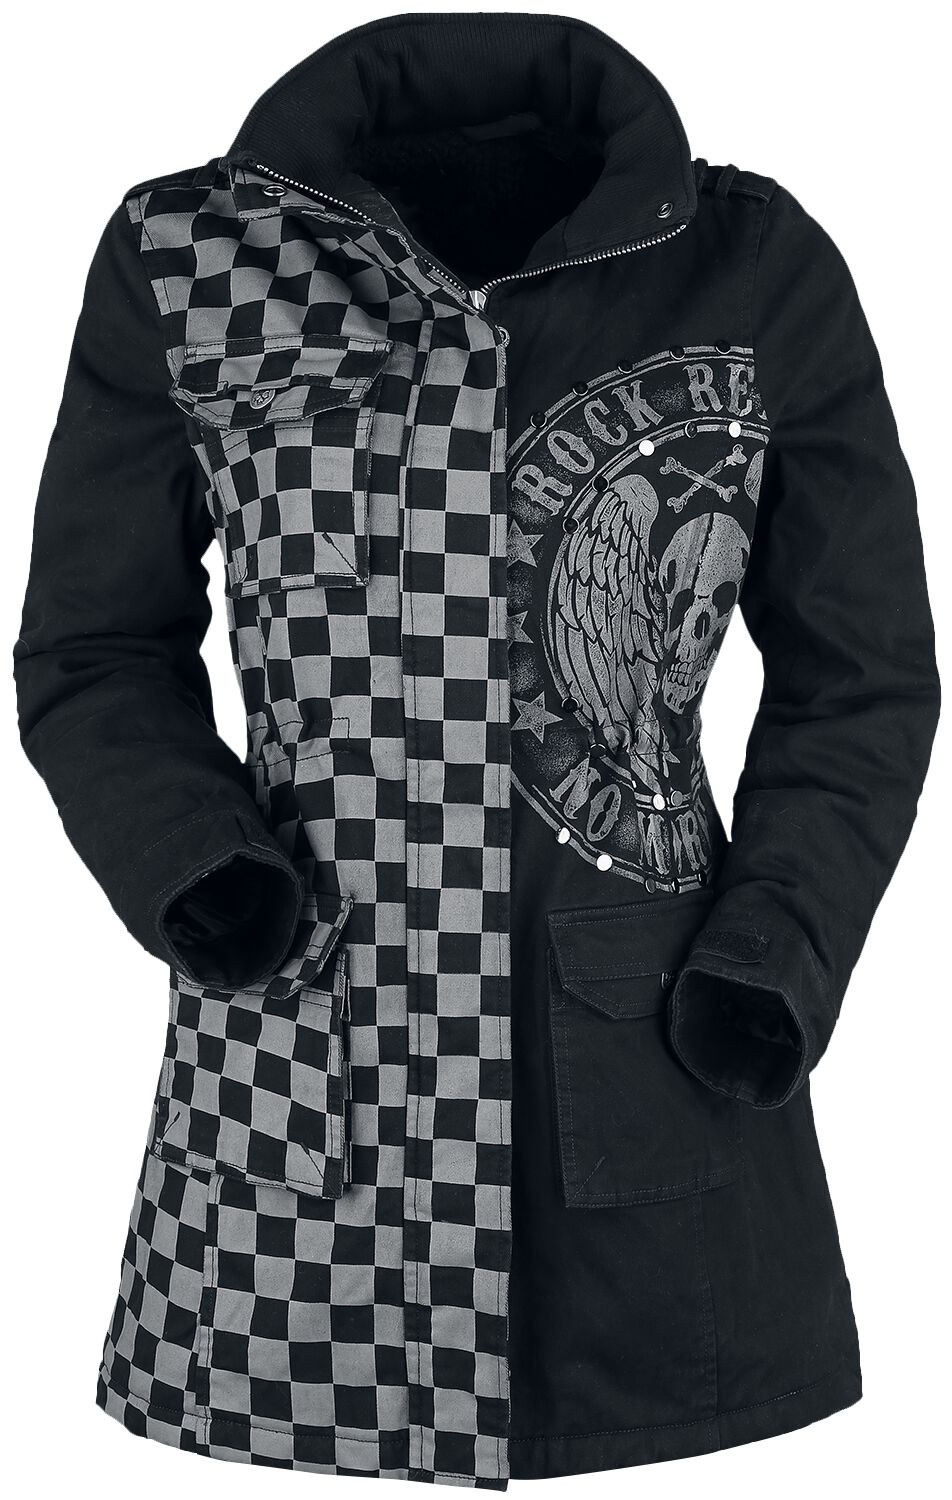 Rock Rebel by EMP - Rock Winterjacke - schwarz/graue Jacke mit Nieten und Print - S bis XXL - für Damen - Größe XL - grau/schwarz von Rock Rebel by EMP